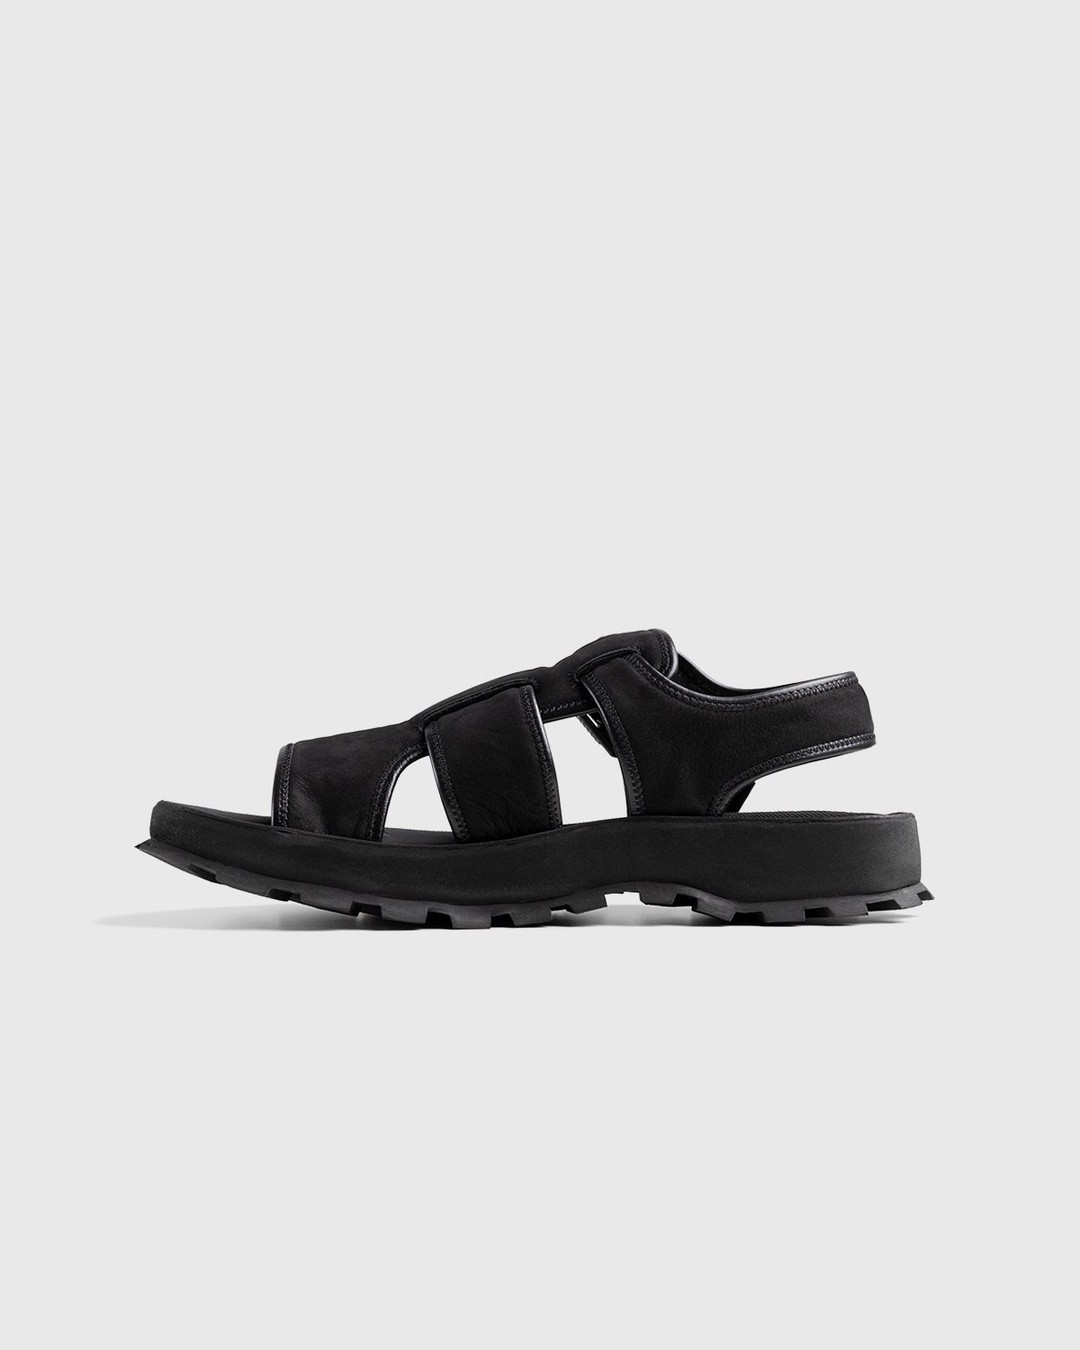 Jil Sander – Calfskin Leather Sandal Black - Sandals & Slides - Black - Image 2